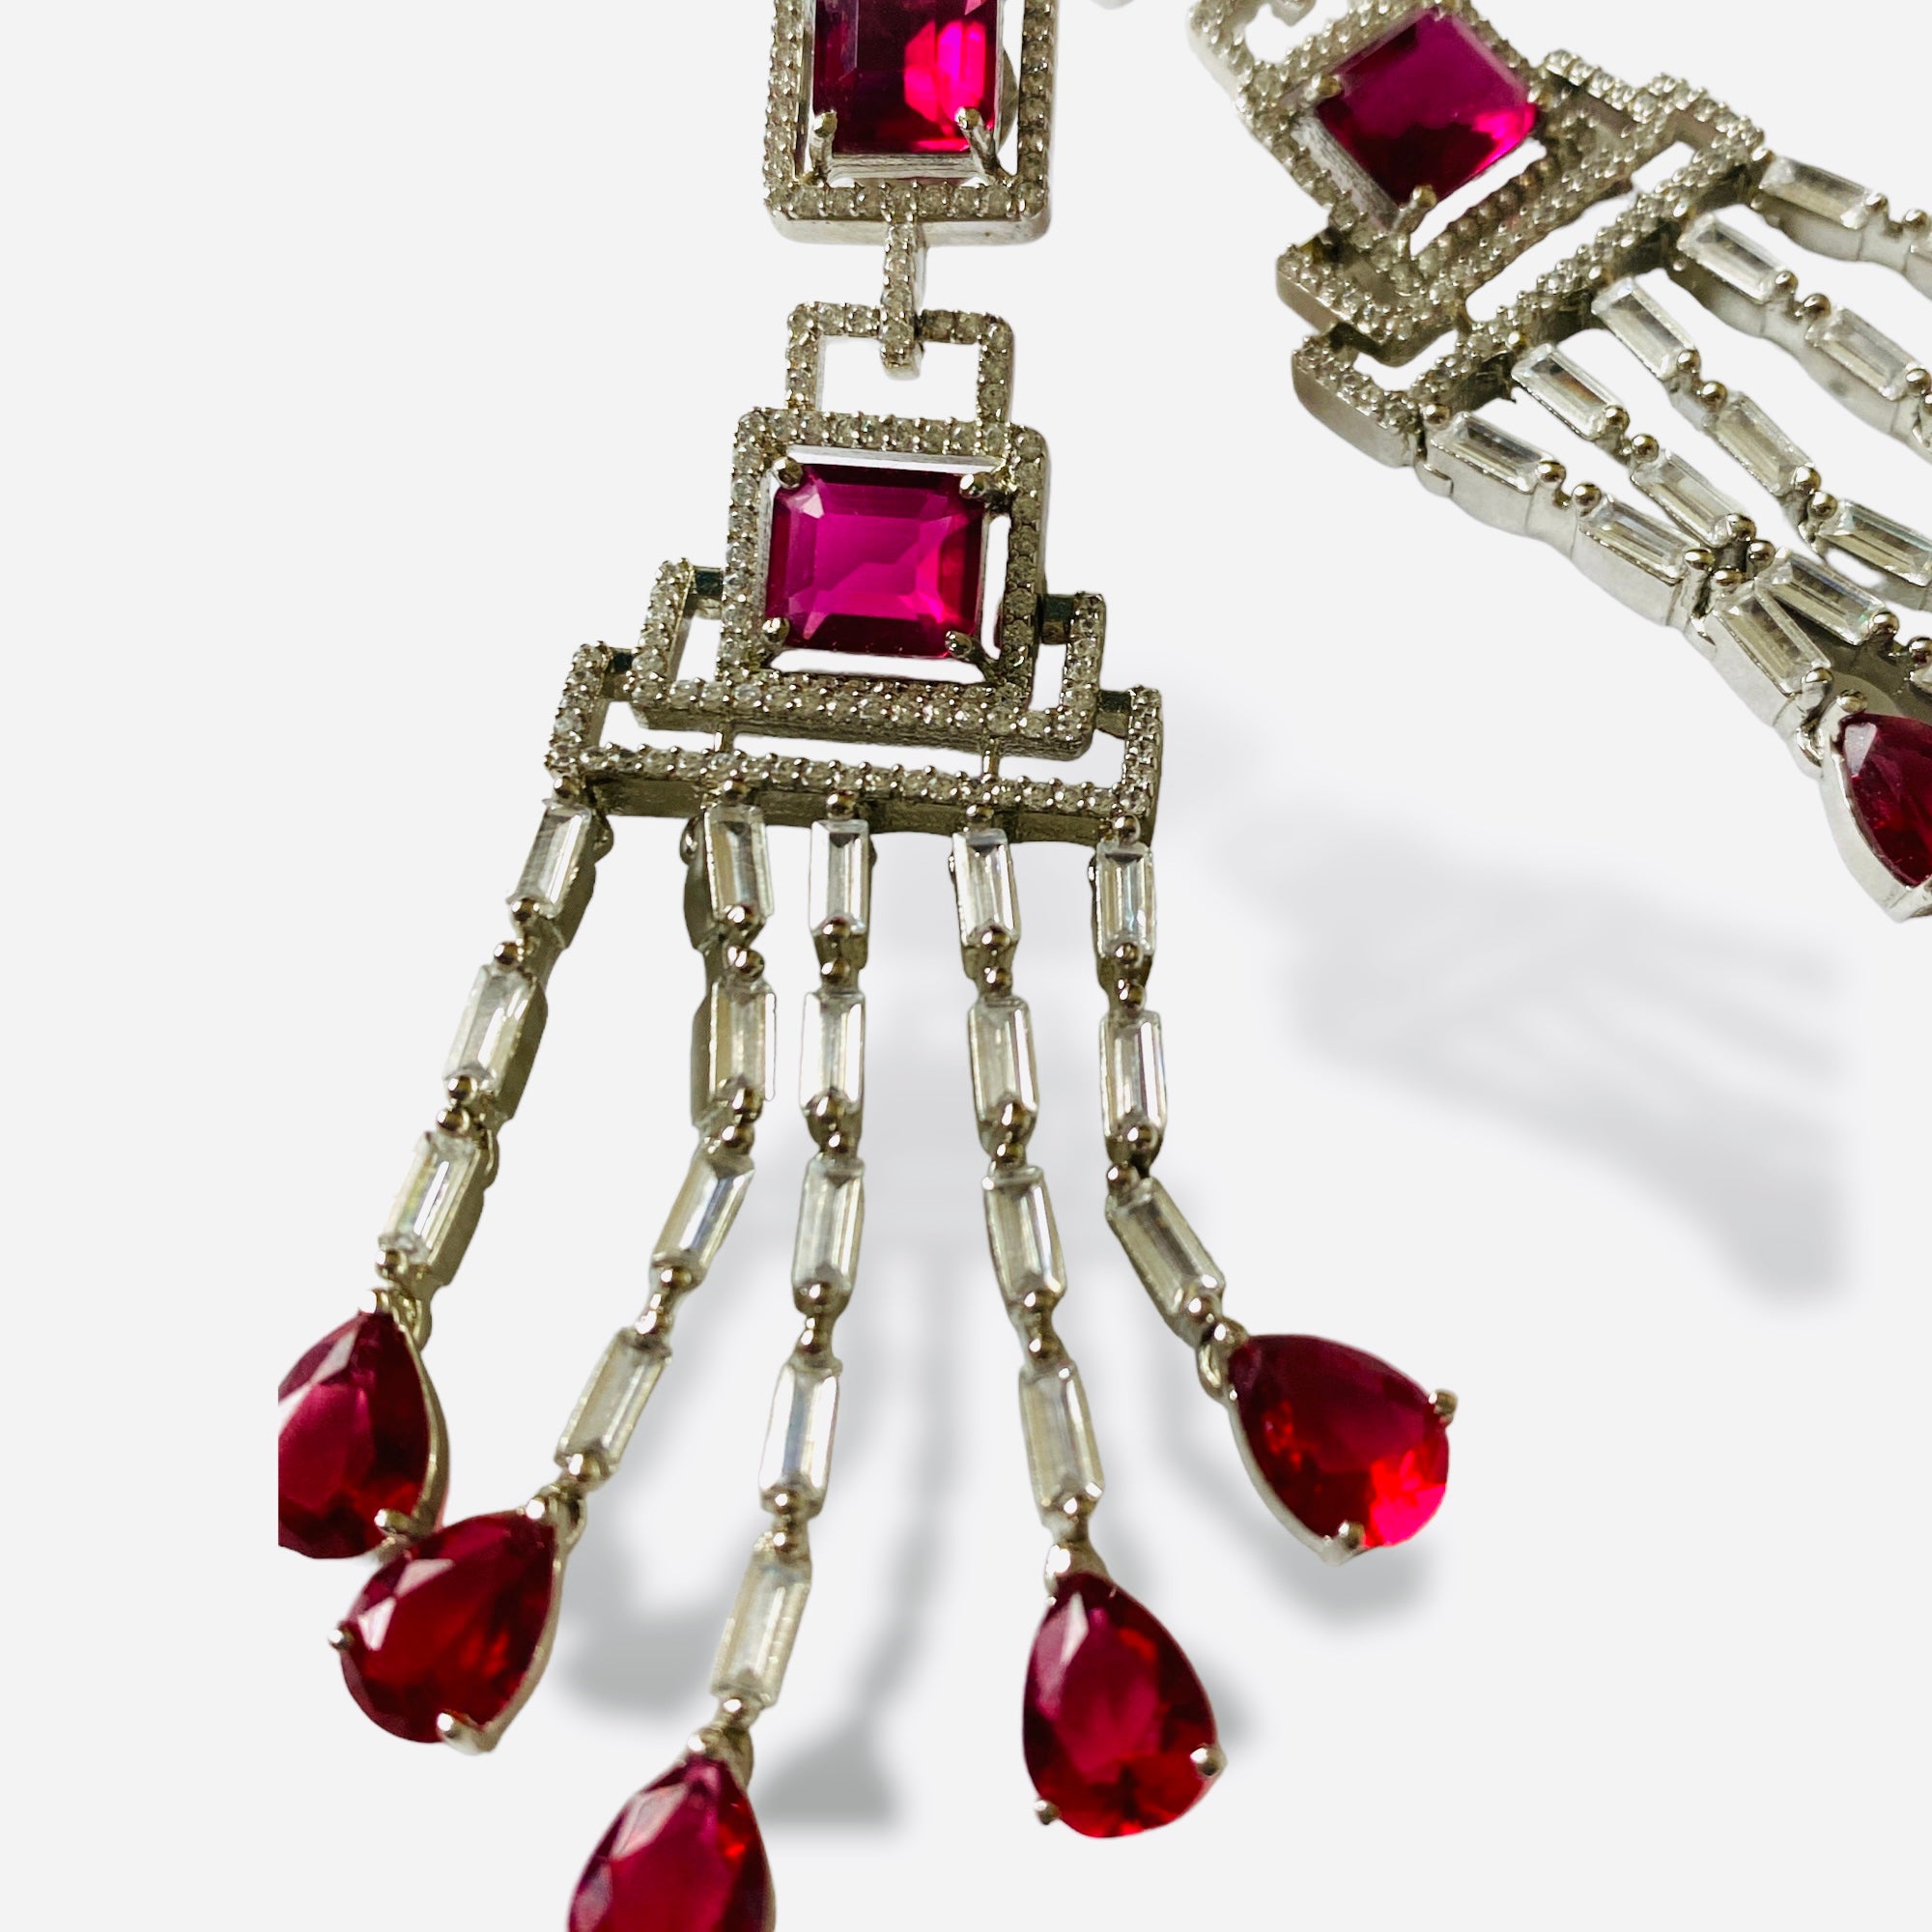 Ruby chandelier earrings